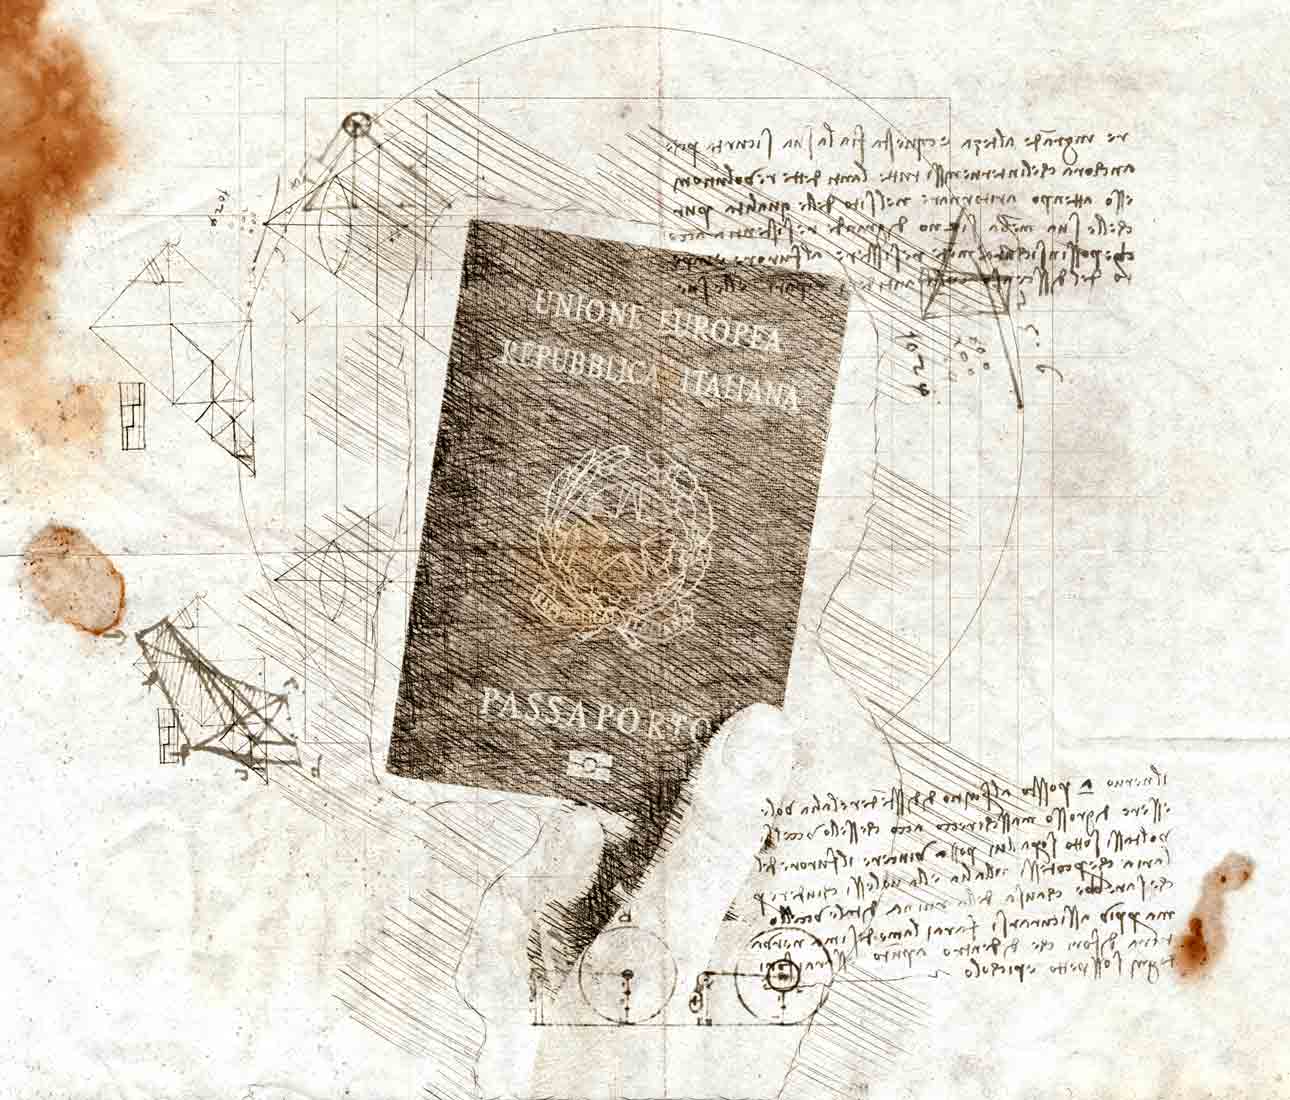 sketch of a hand holding an Italian passport